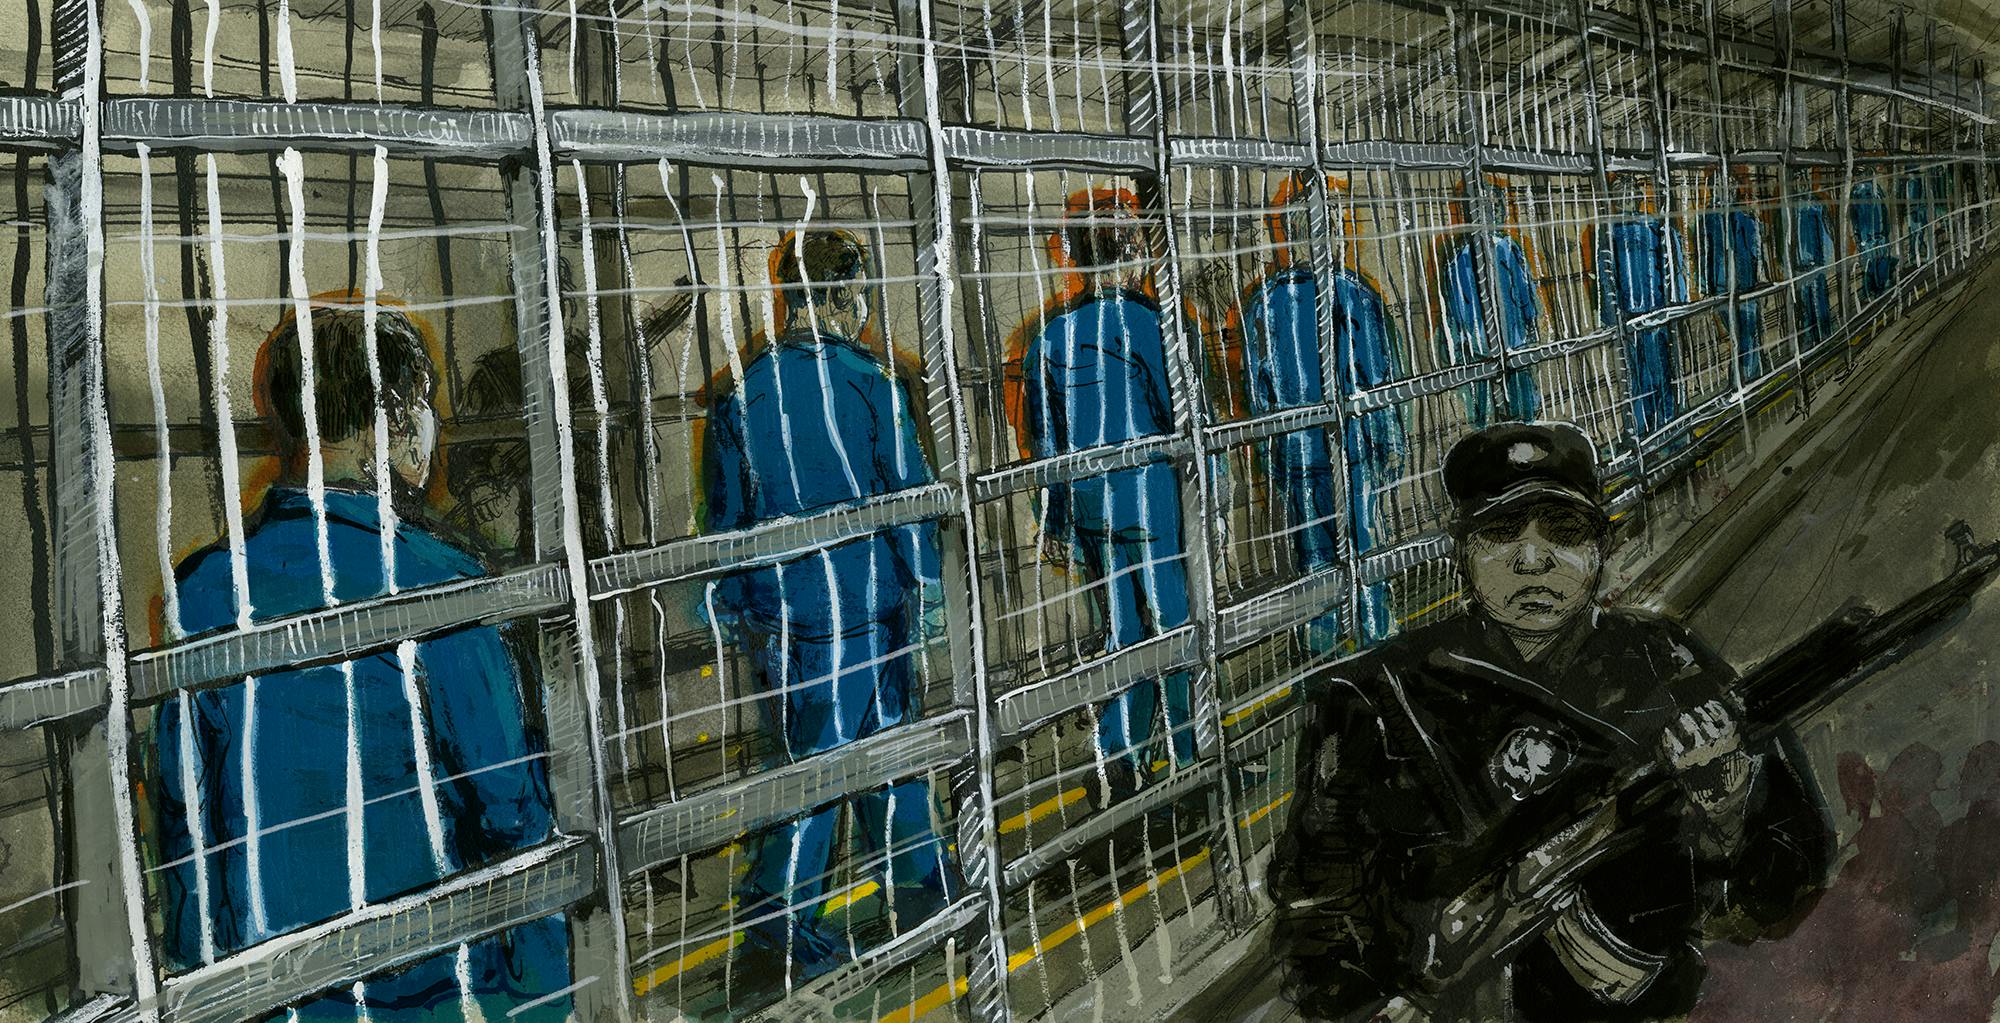 Les détenus traversent une étroite enceinte clôturée - en fait une cage - pour se rendre du bâtiment où se trouvent leurs cellules à celui où se trouvent leurs salles de classe.